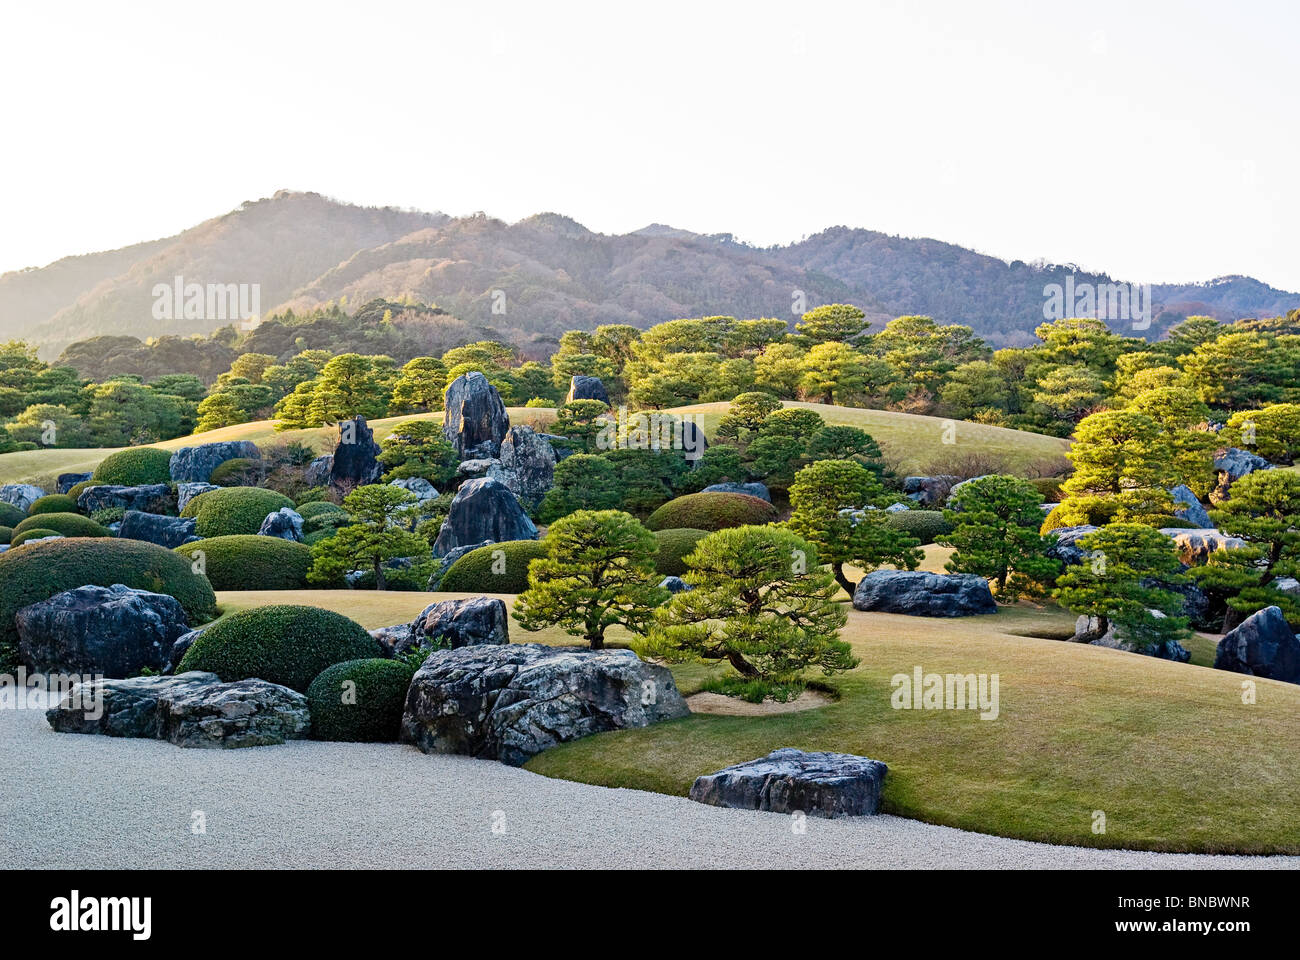 Jardin japonais au musée Adachi dans la préfecture de Shimane Japon traditionnel Paysage japonais Banque D'Images